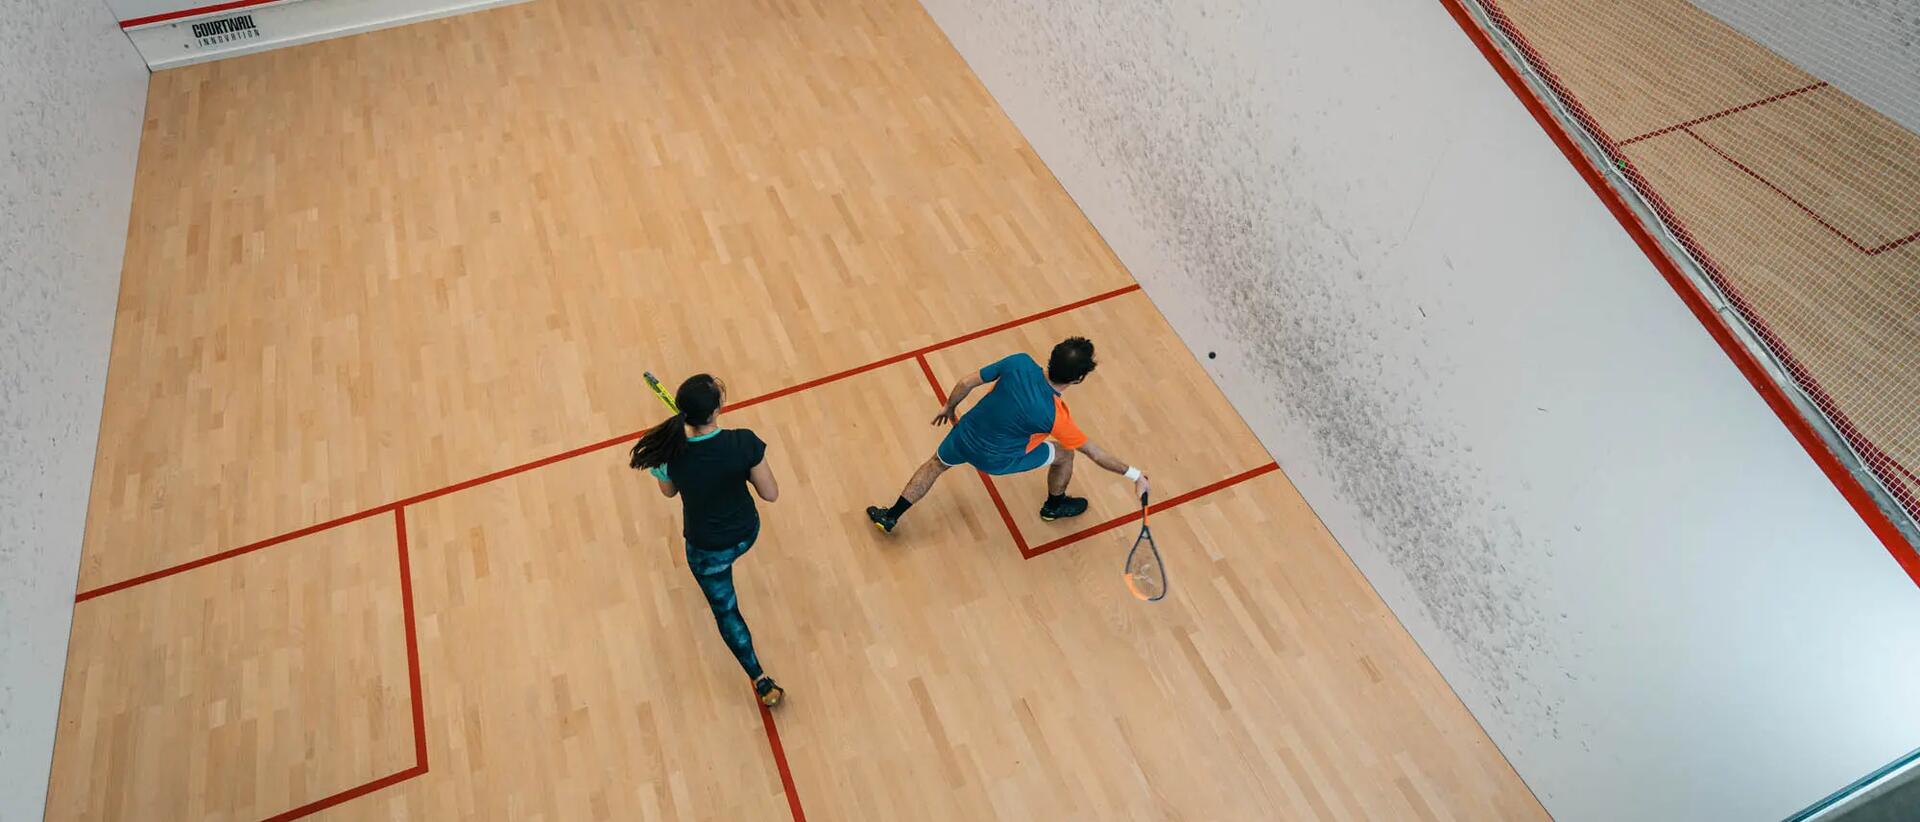 kobieta i mężczyzna grający w squasha na boisku